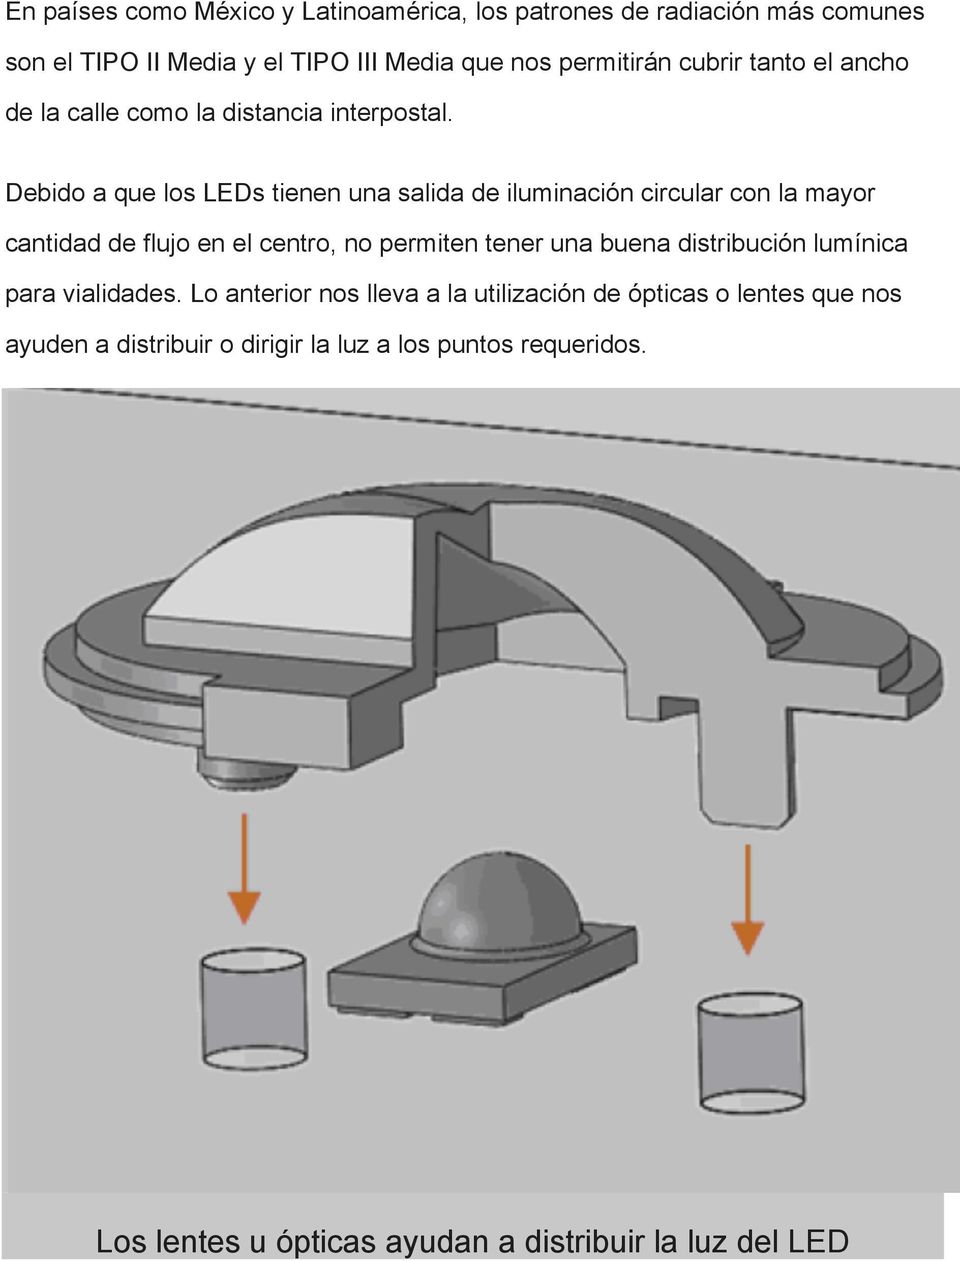 Debido a que los LEDs tienen una salida de iluminación circular con la mayor cantidad de flujo en el centro, no permiten tener una buena